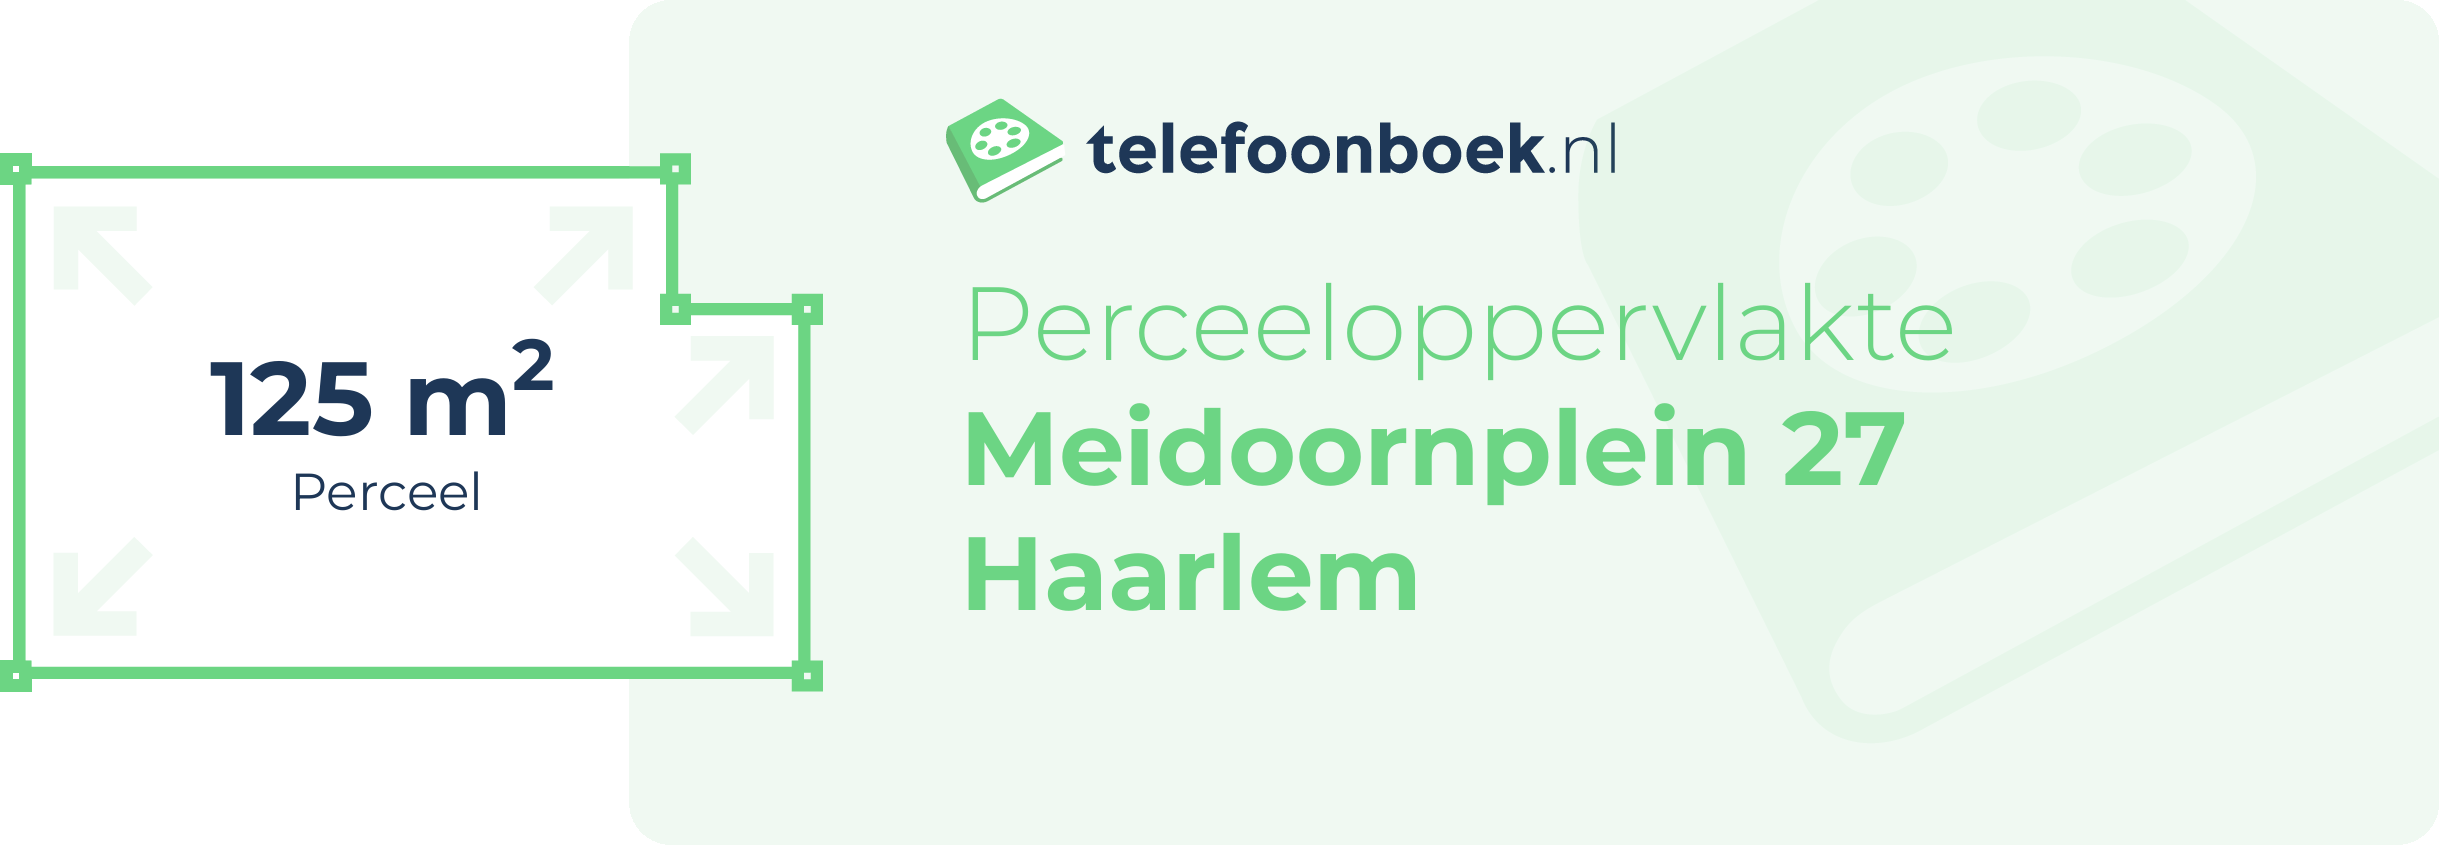 Perceeloppervlakte Meidoornplein 27 Haarlem